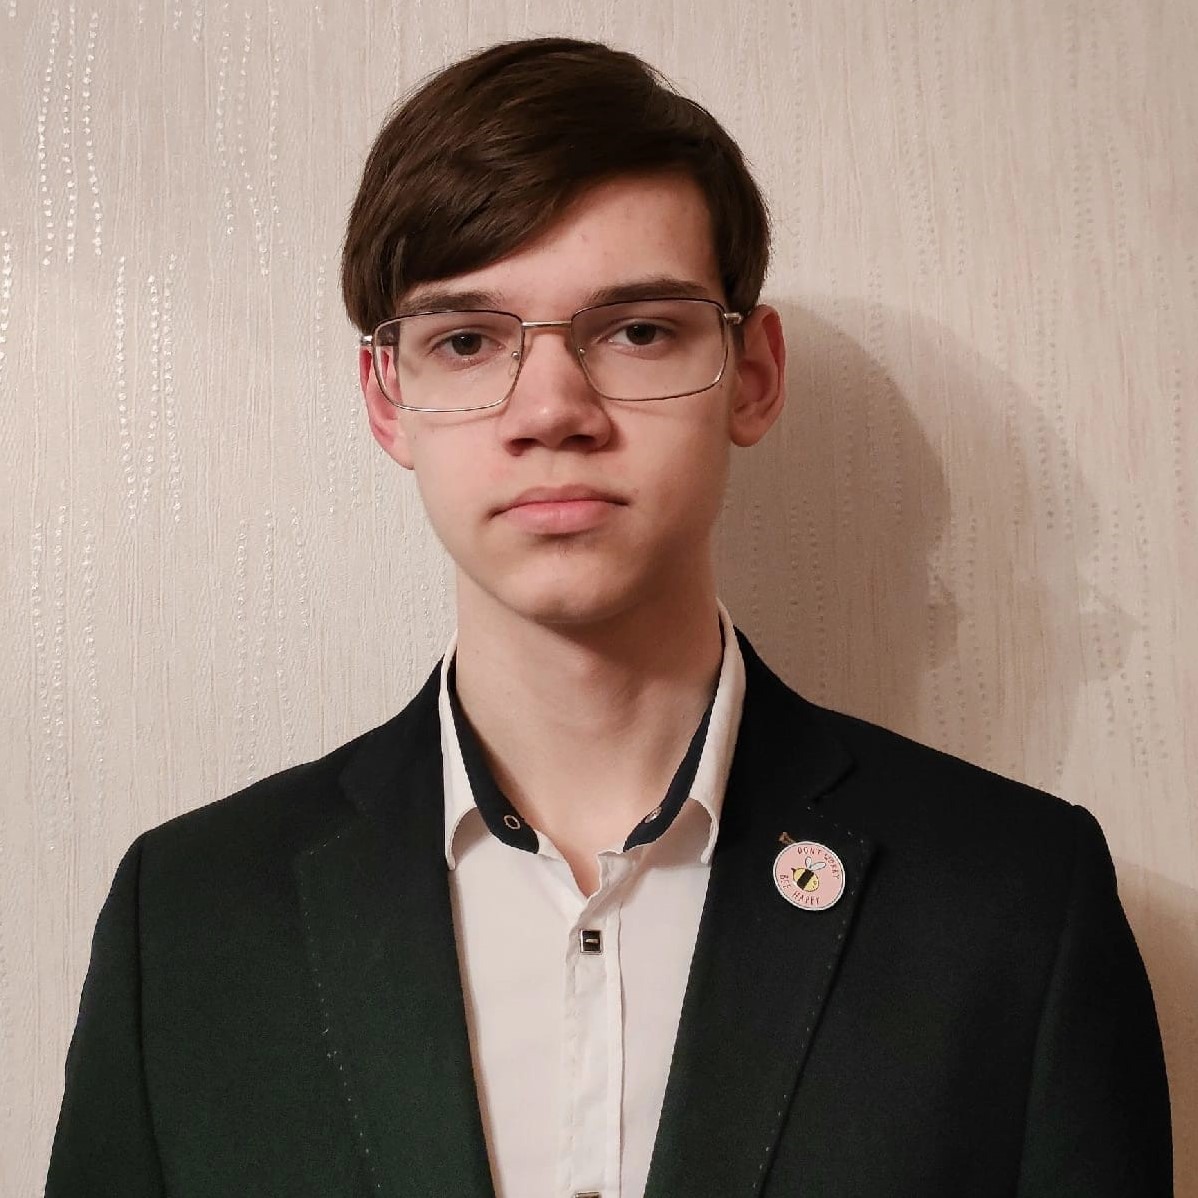 Алексей Поляков из школы 8 выиграл областную олимпиаду по английскому языку